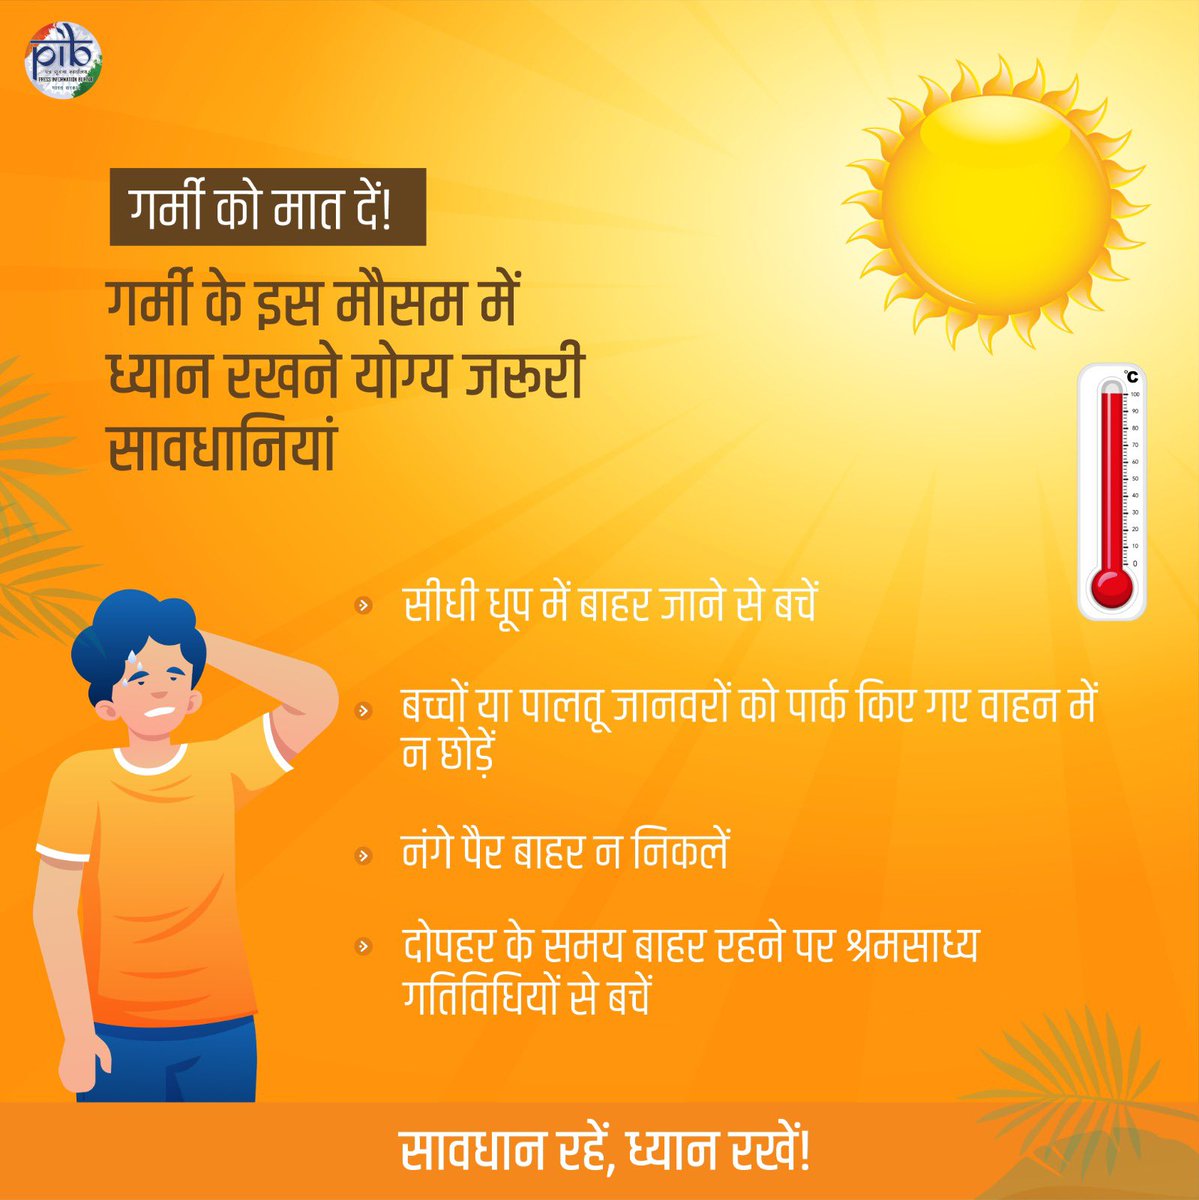 इस गर्मी के मौसम में ध्यान रखने योग्य आवश्यक सावधानियाँ!👇 #BeatTheHeat #HeatWave